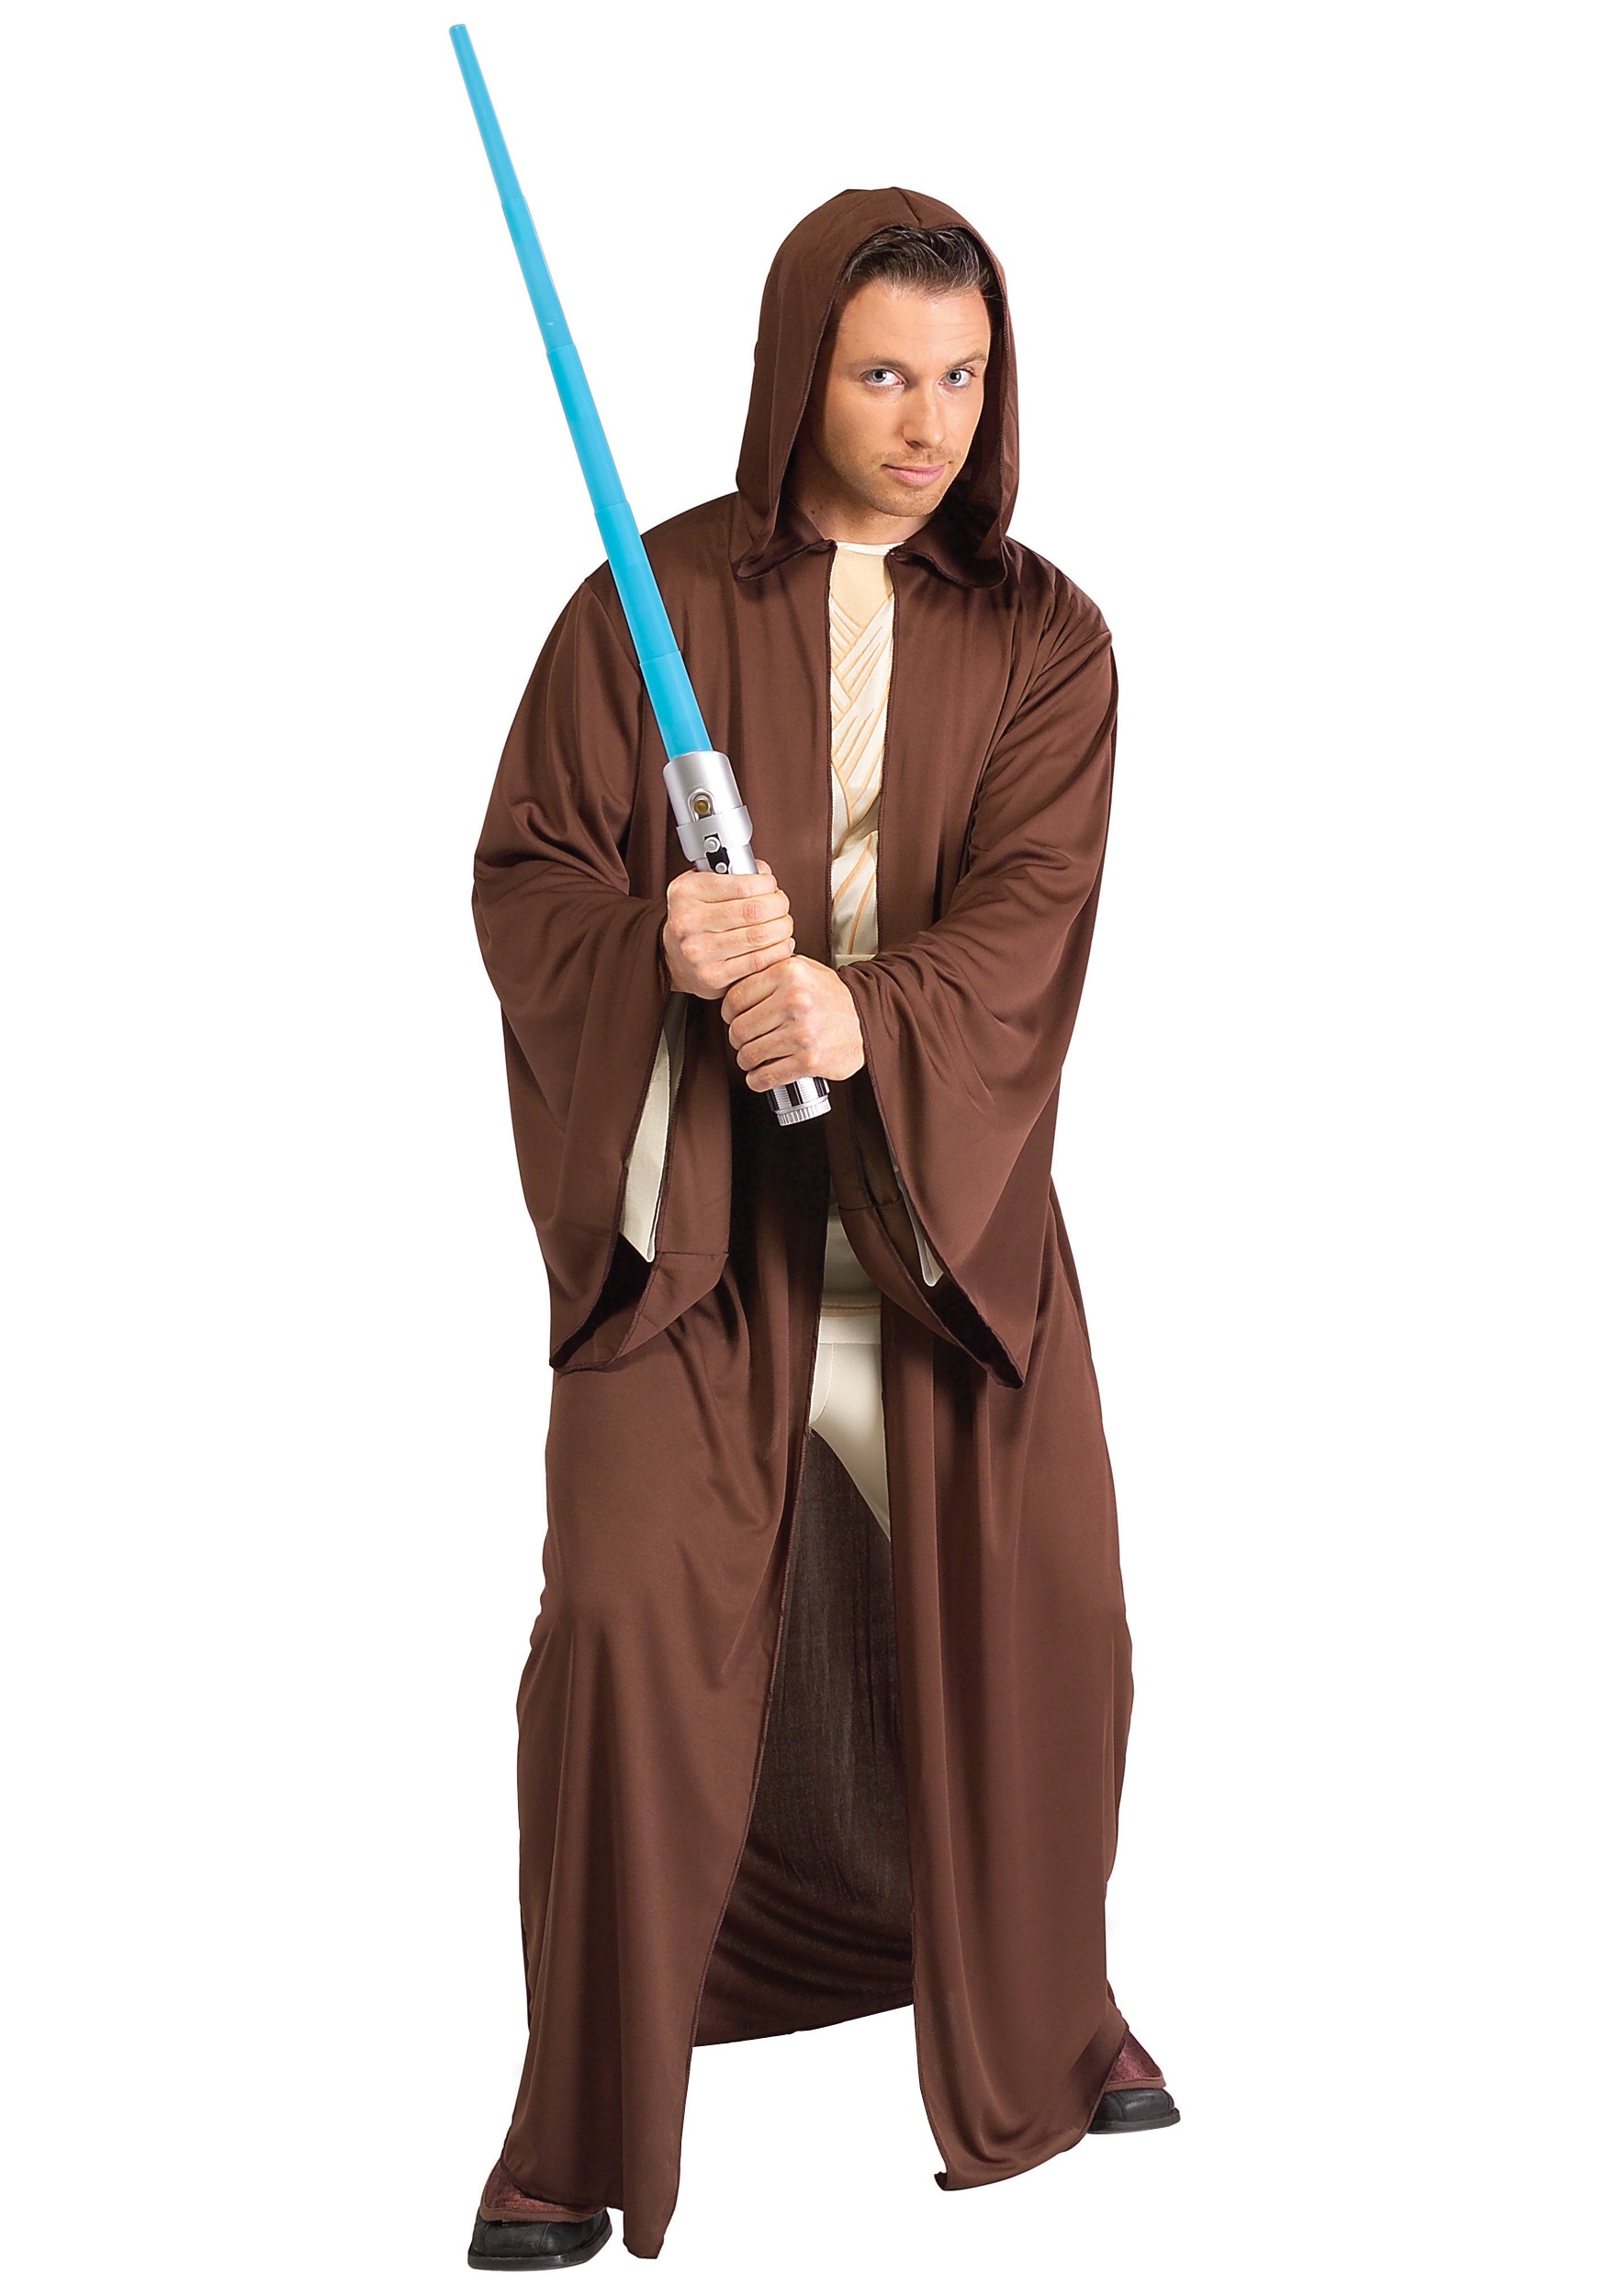 pik Demonteer salade Star Wars Jedi kostuum met lightsaber kopen? Nu €24,95! - FeestinjeBeest.nl